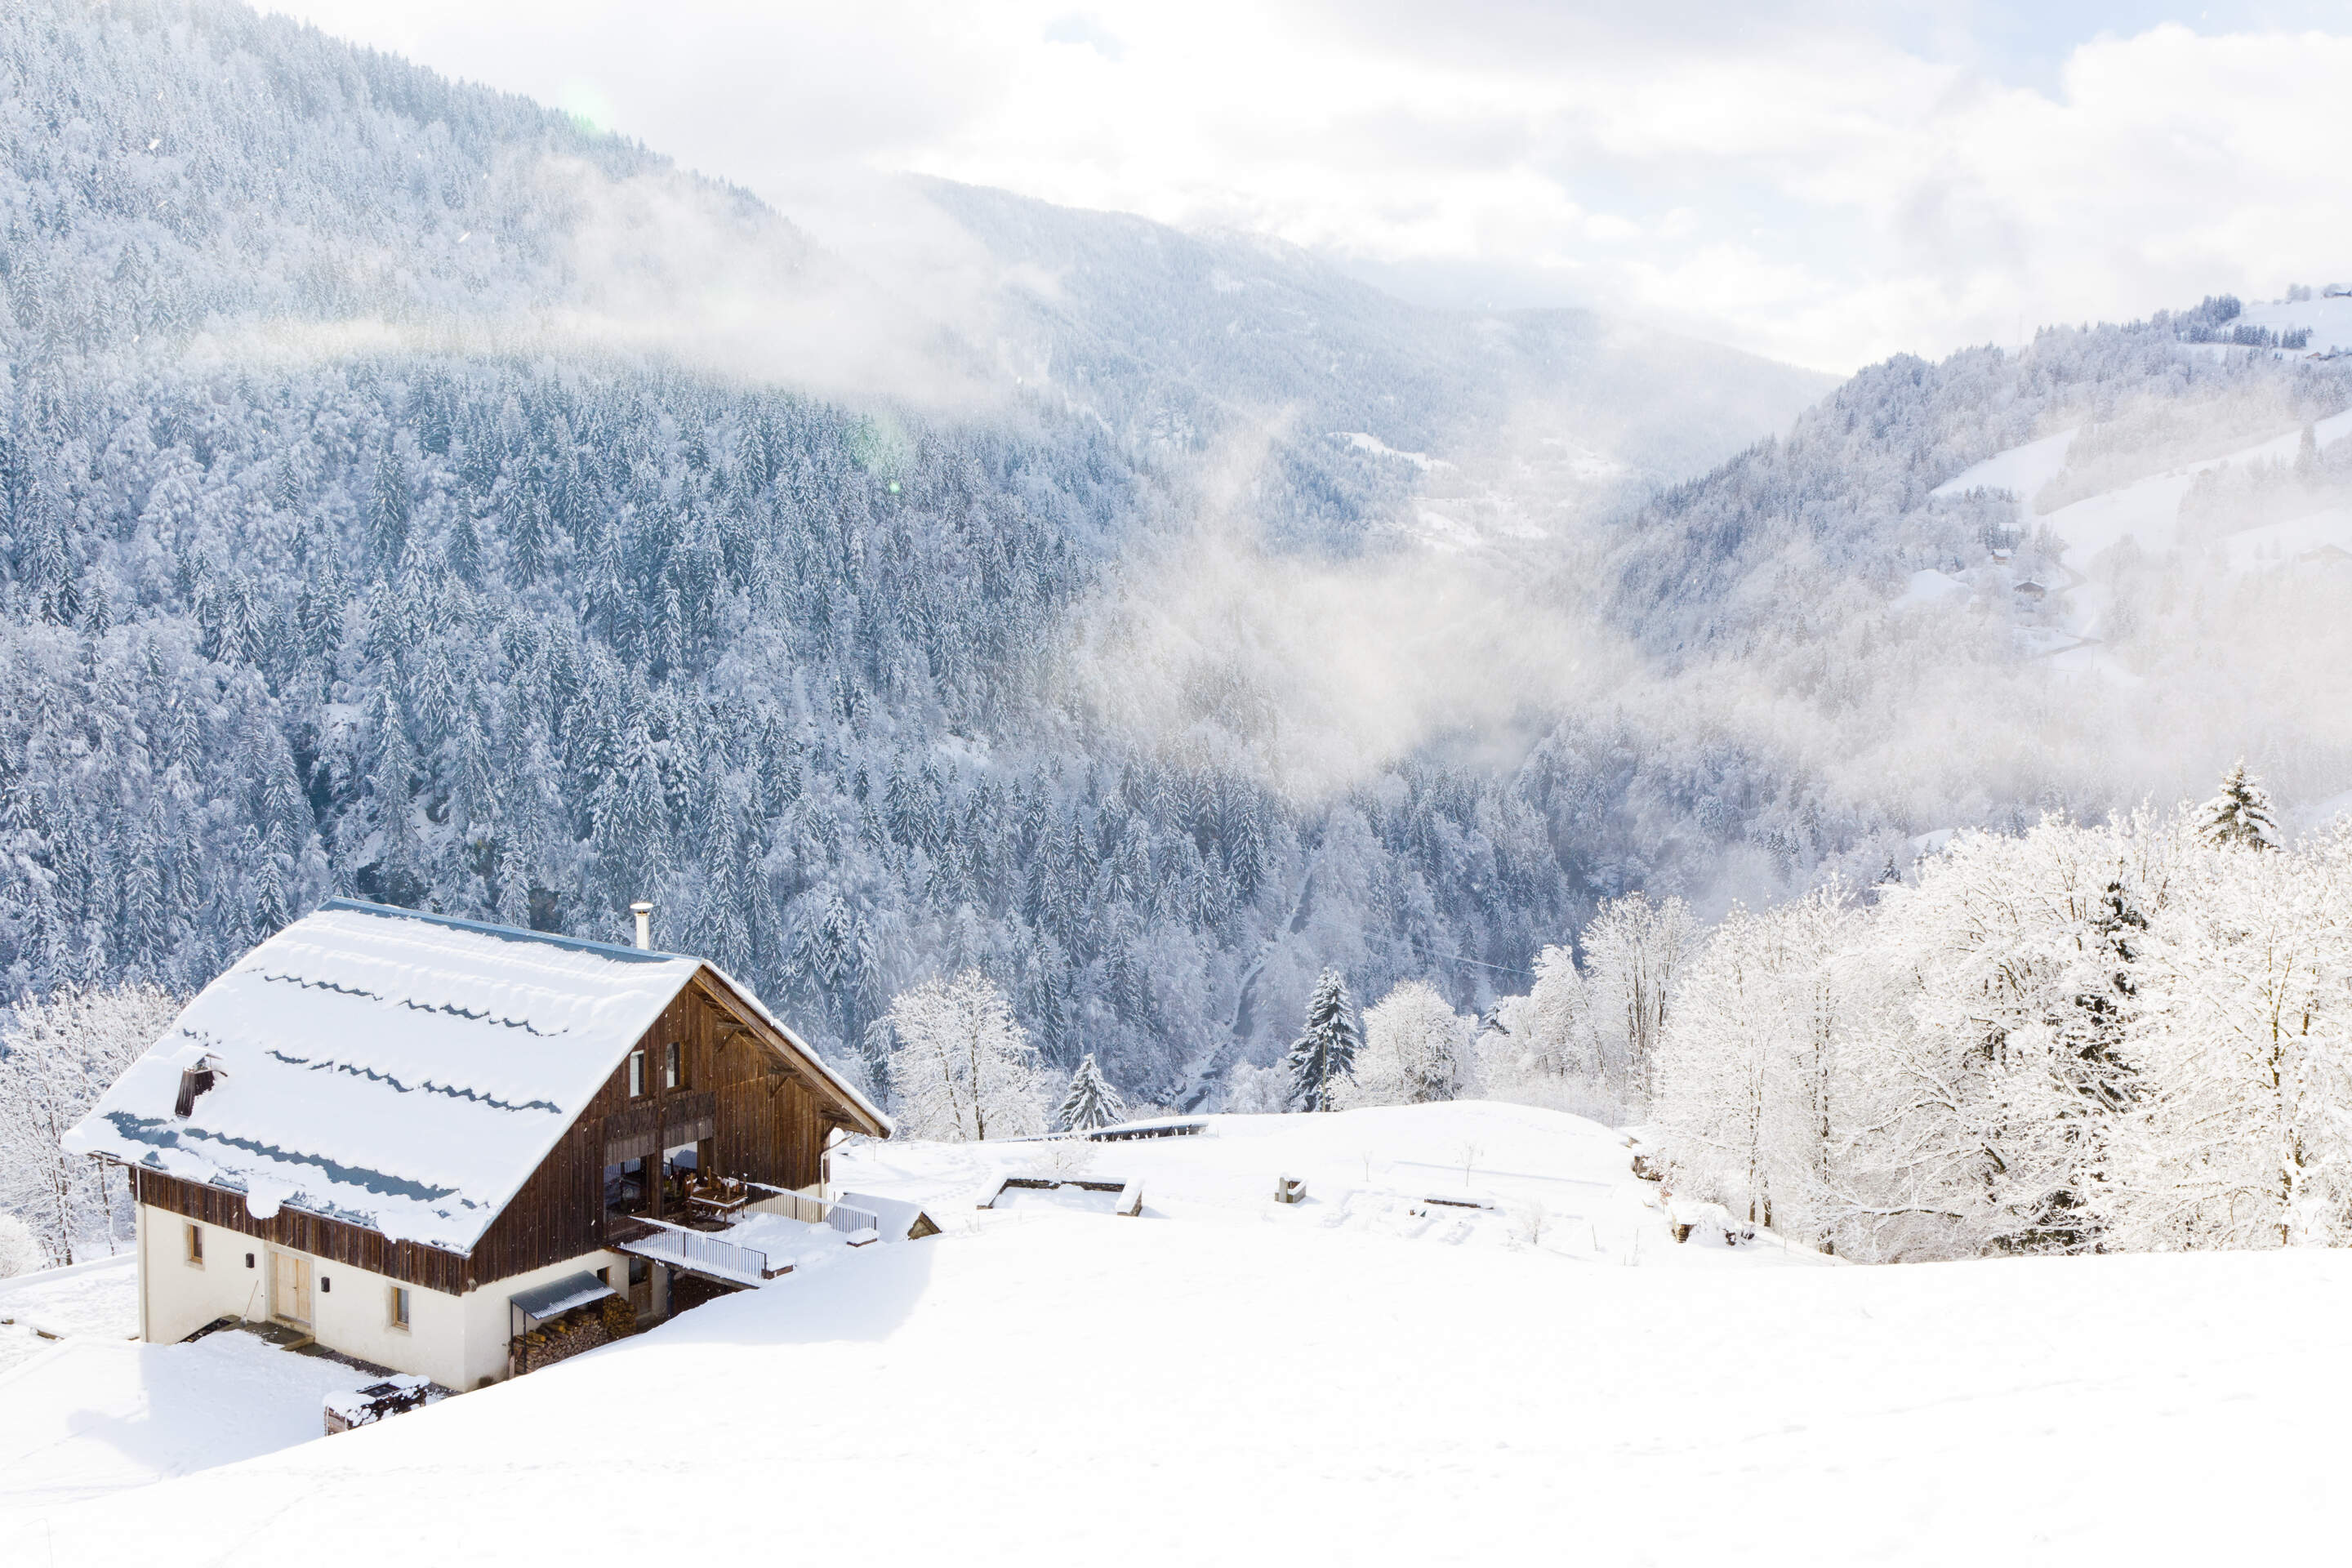 Chalet au ski : location de chalet à la montagne pour vos vacances d'hiver